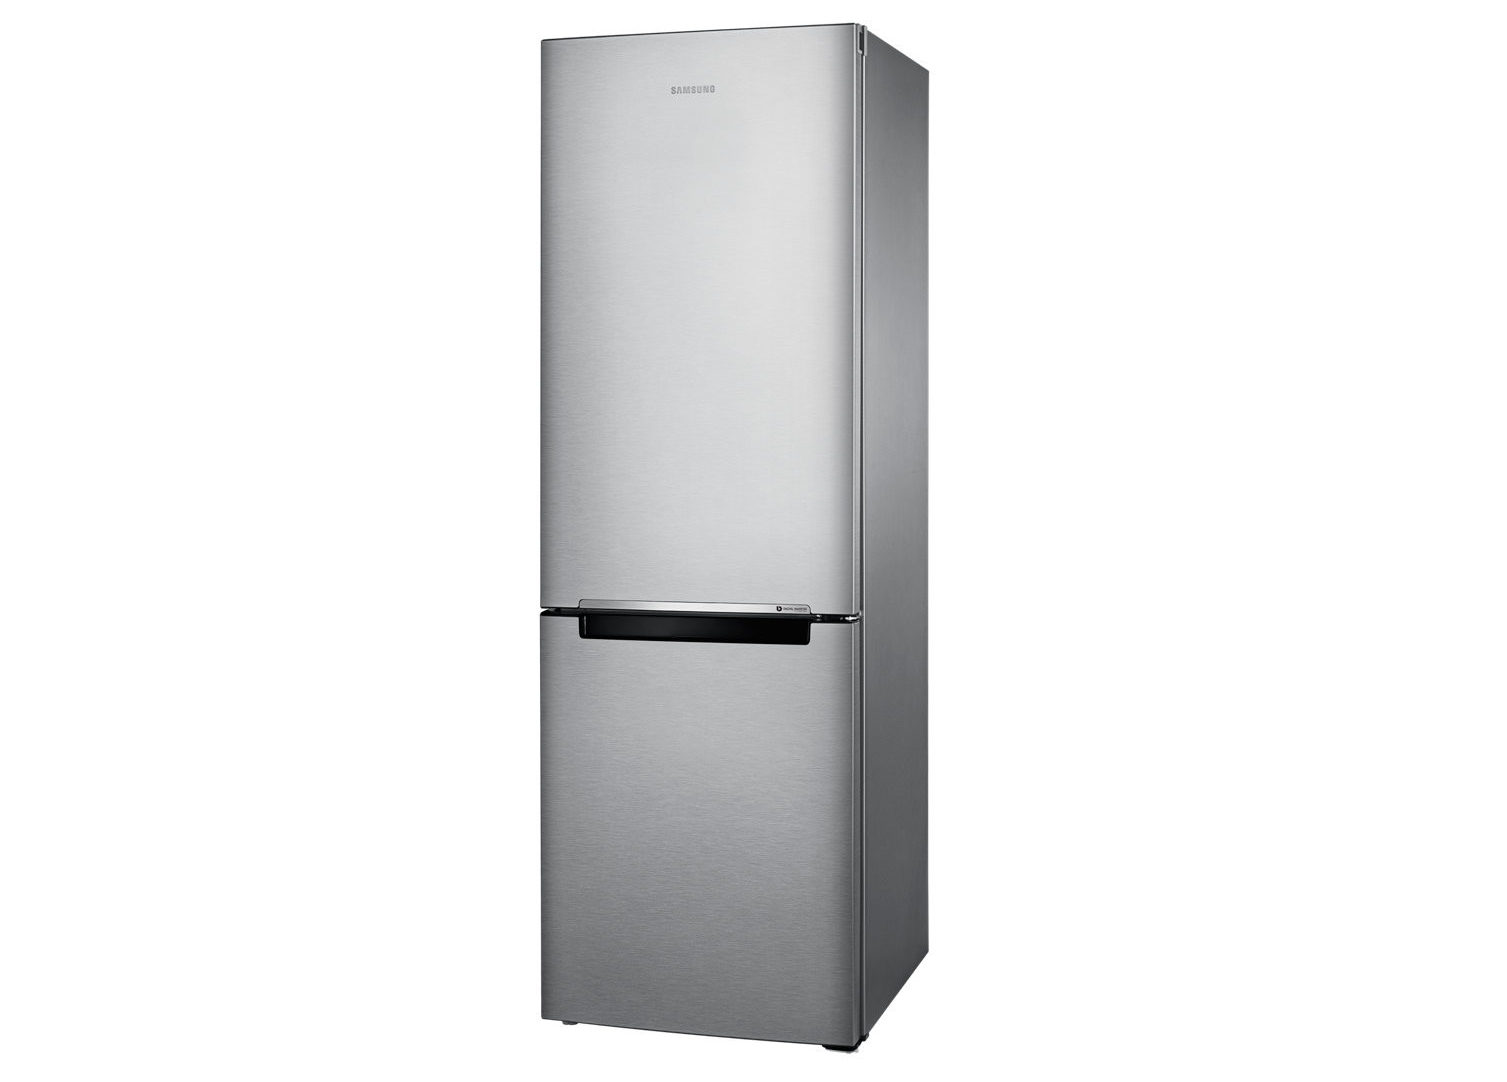 ТОП холодильников Samsung по отзывам покупателей - Samsung RB33J3000SA